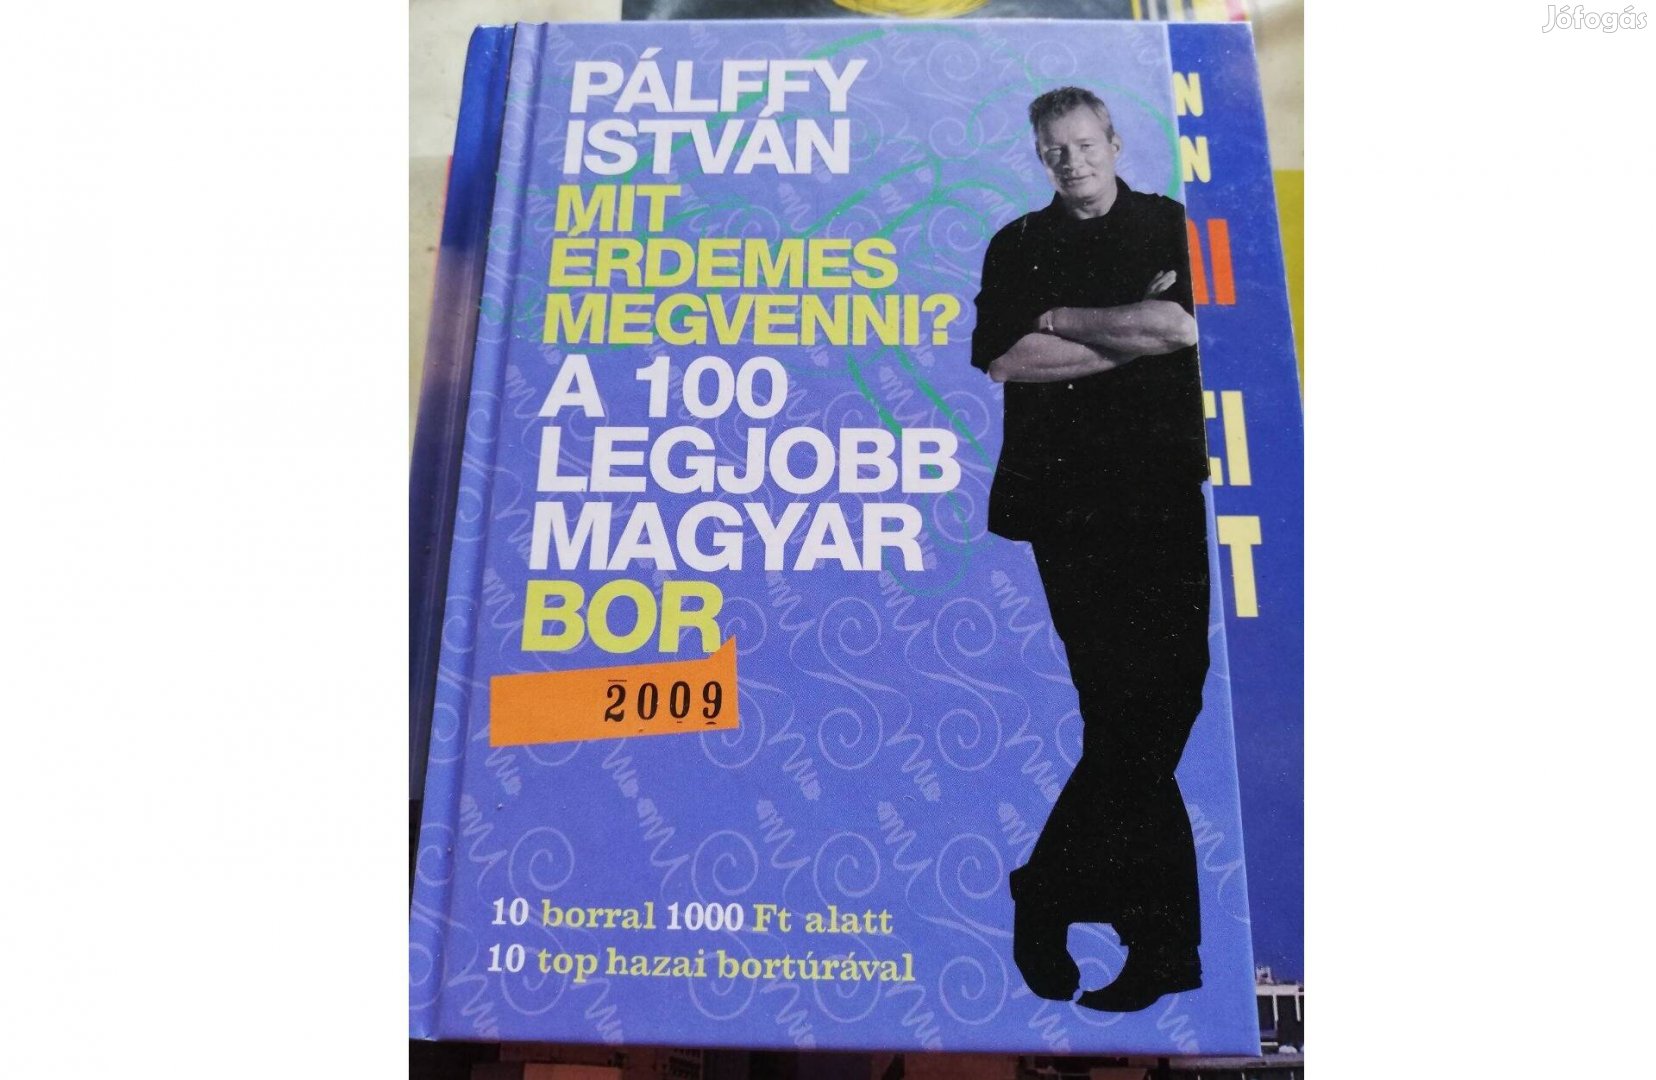 Pálffy István - a 100 legjobb magyar bor